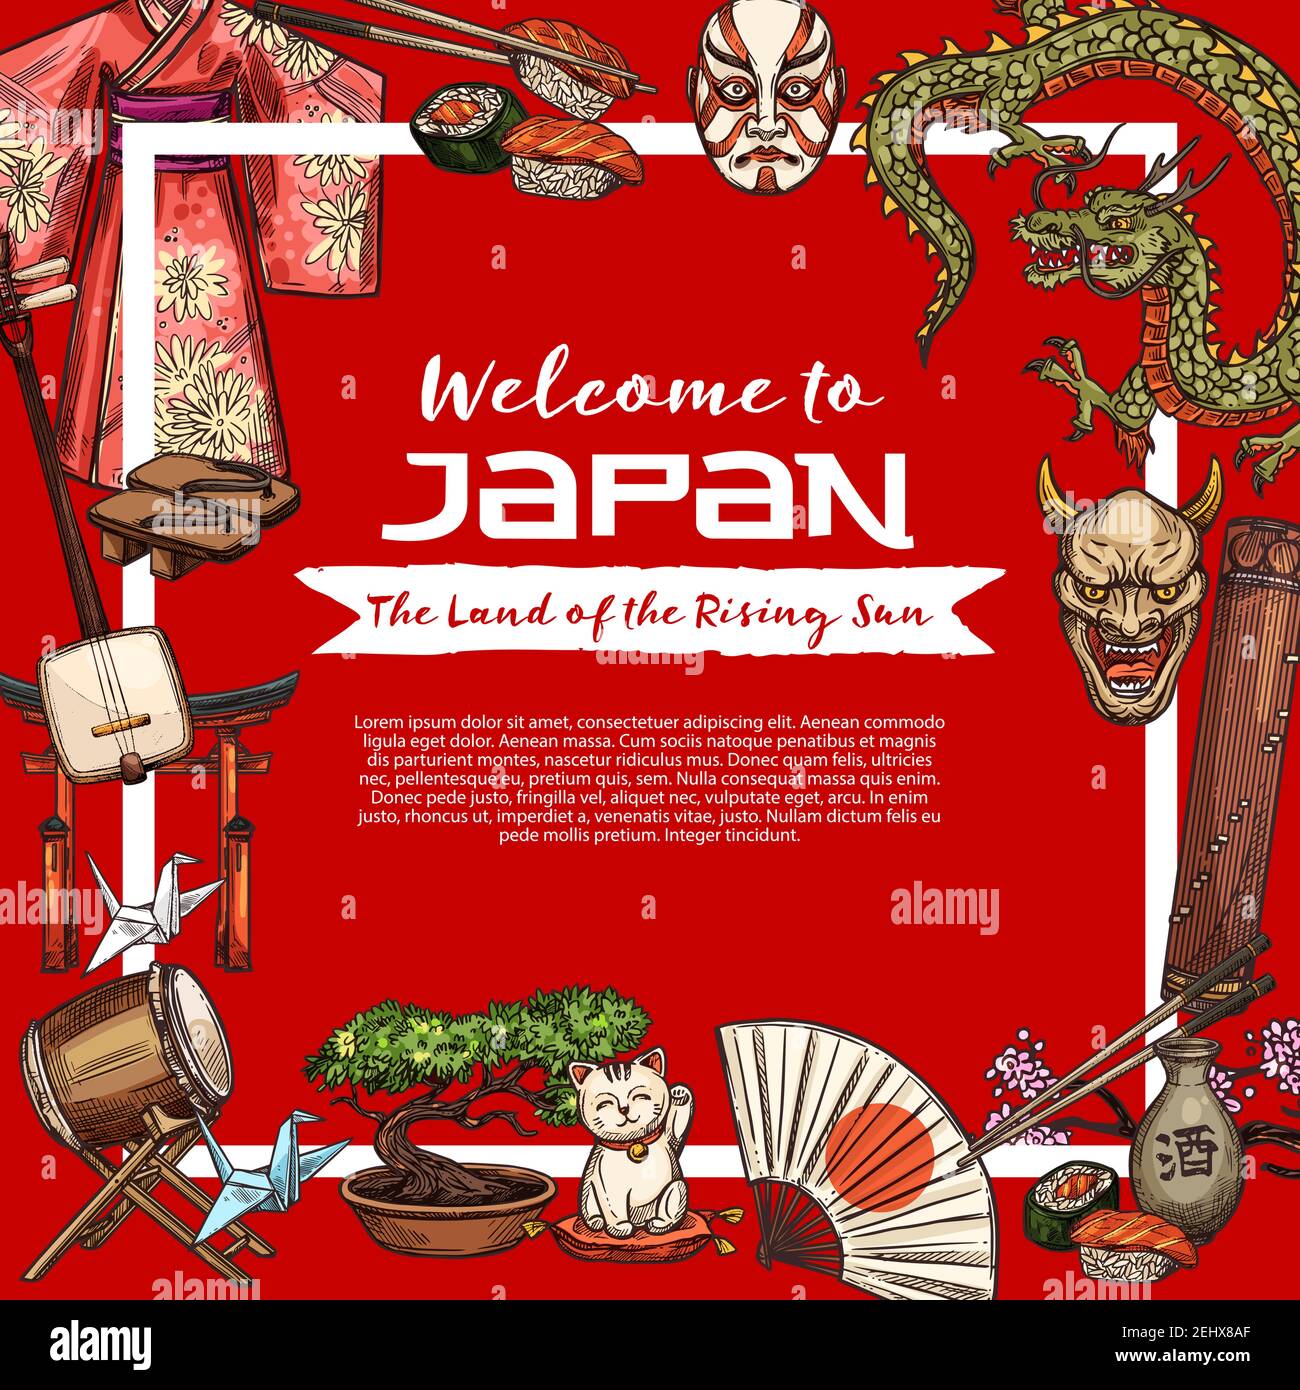 Bienvenue à l'affiche de voyage Japon. Kimono de soie vecteur de geisha, instrument de musique samisen et cygne d'origami, masques de théâtre et dragon, geta et torii ga Illustration de Vecteur